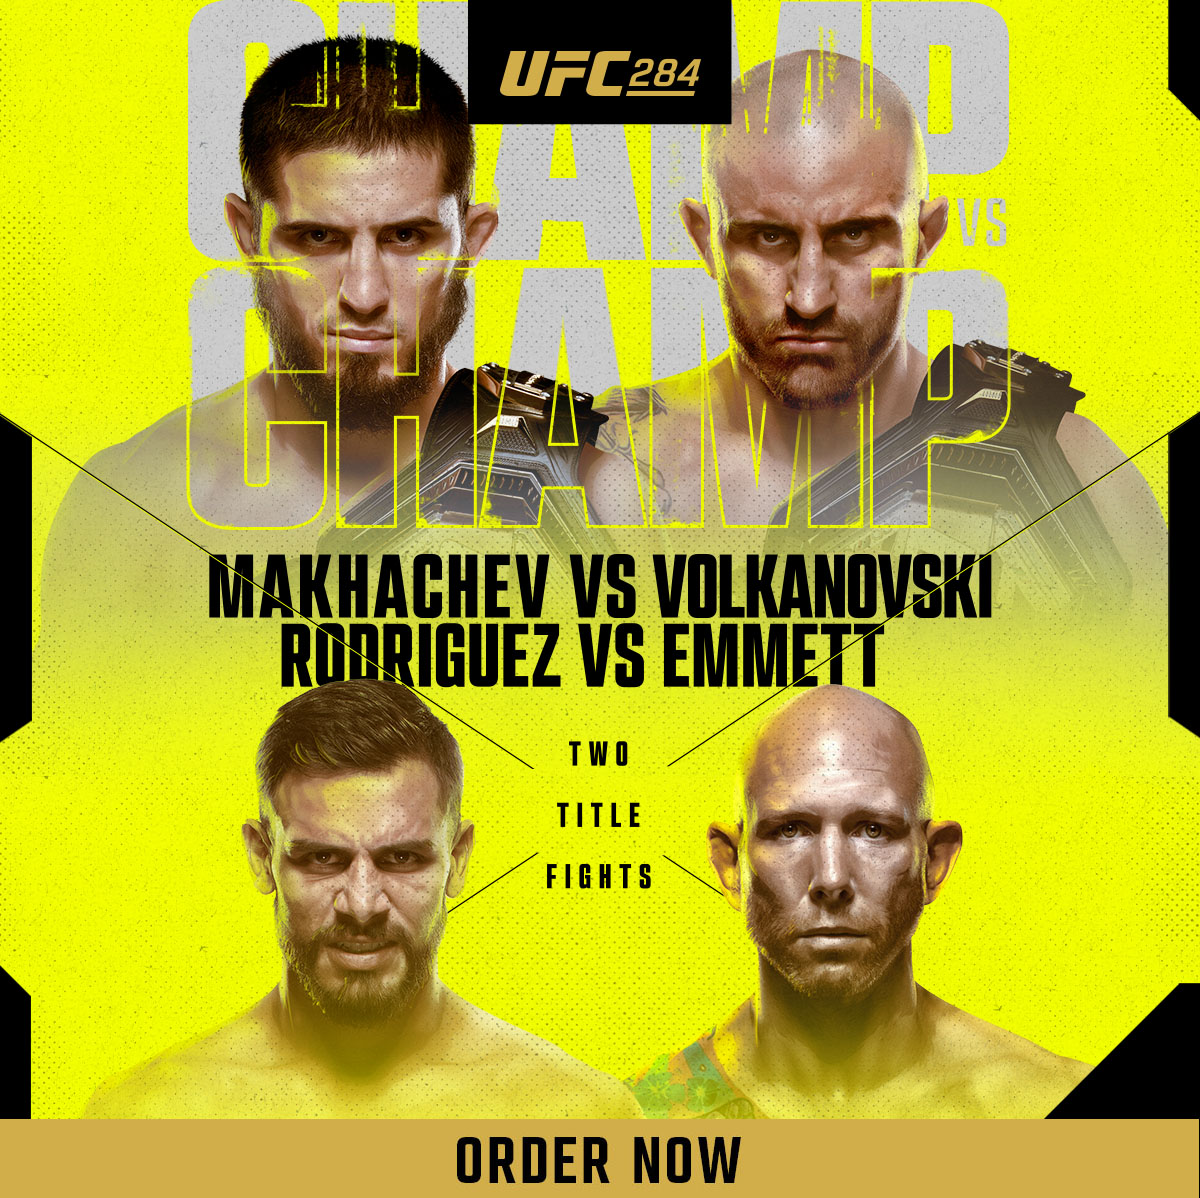 UFC 284: Makhachev vs Volkanovski